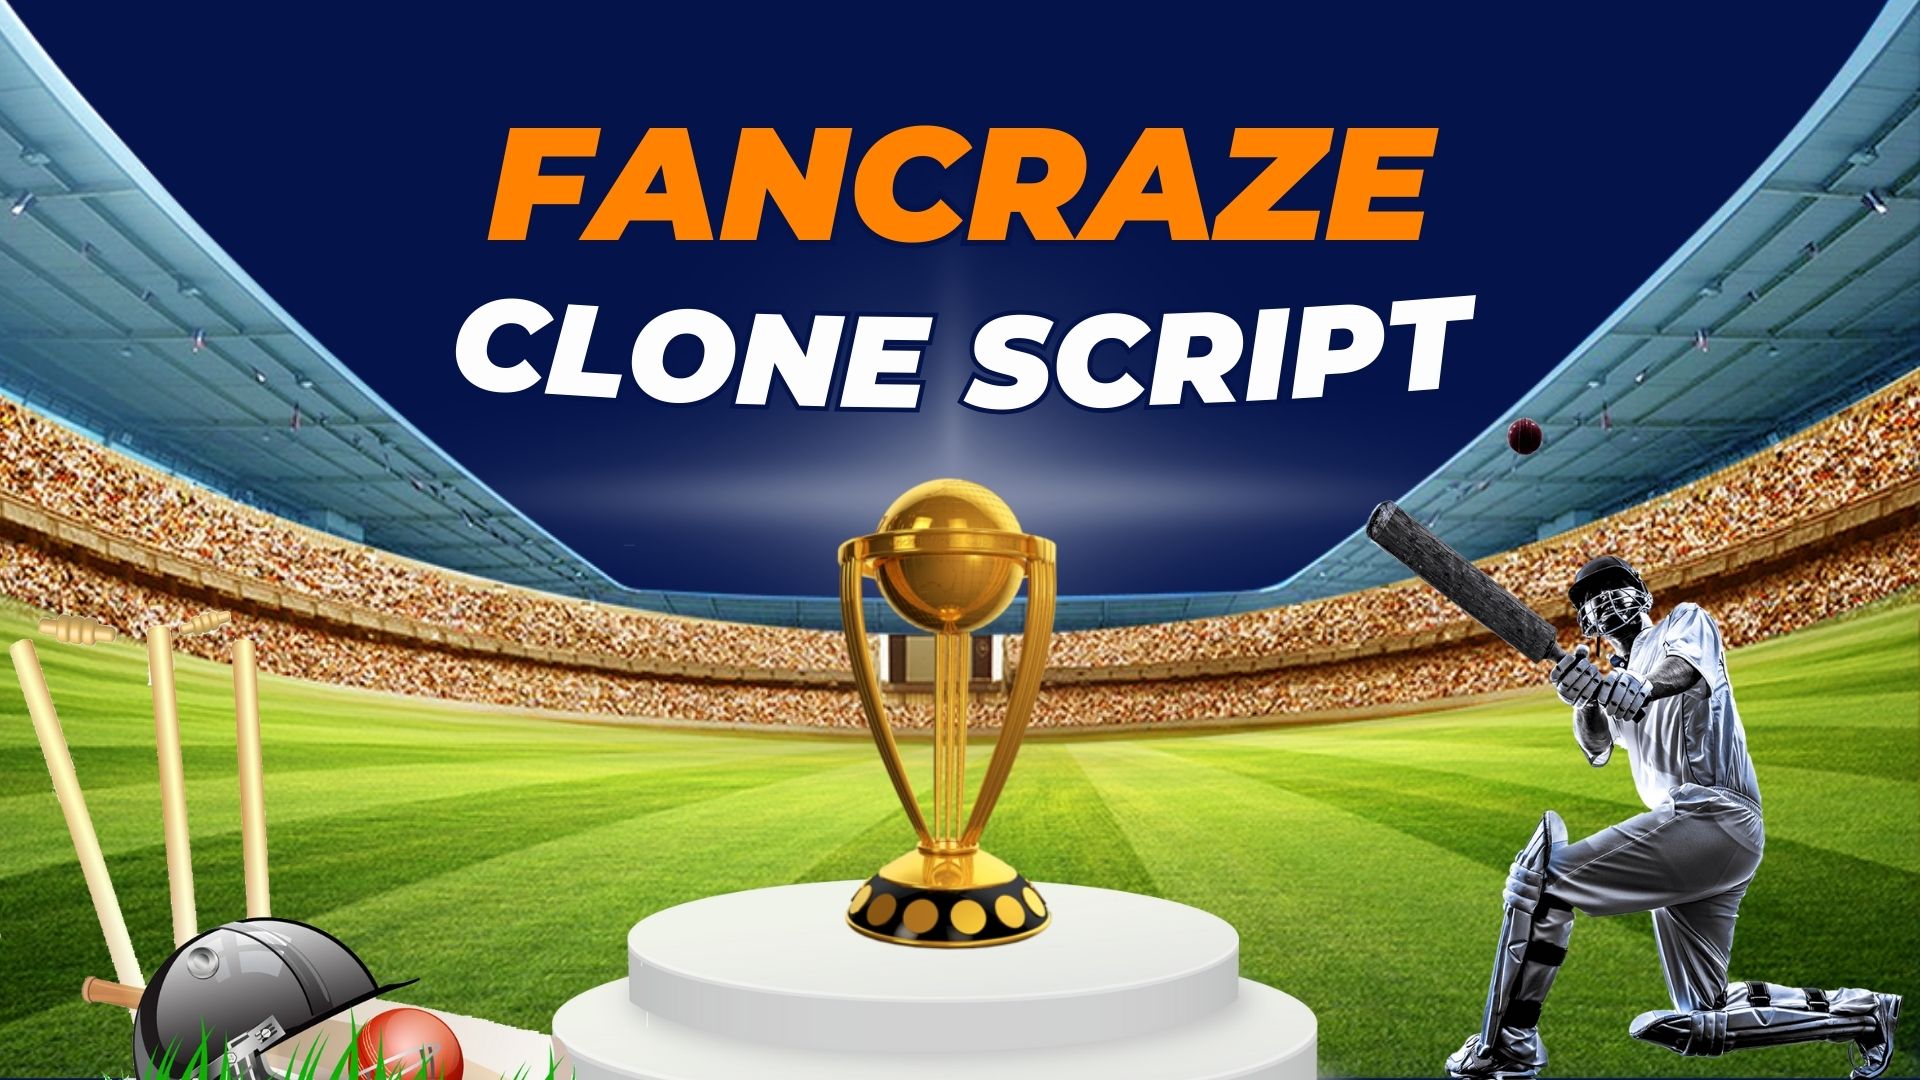 Fancraze clone script